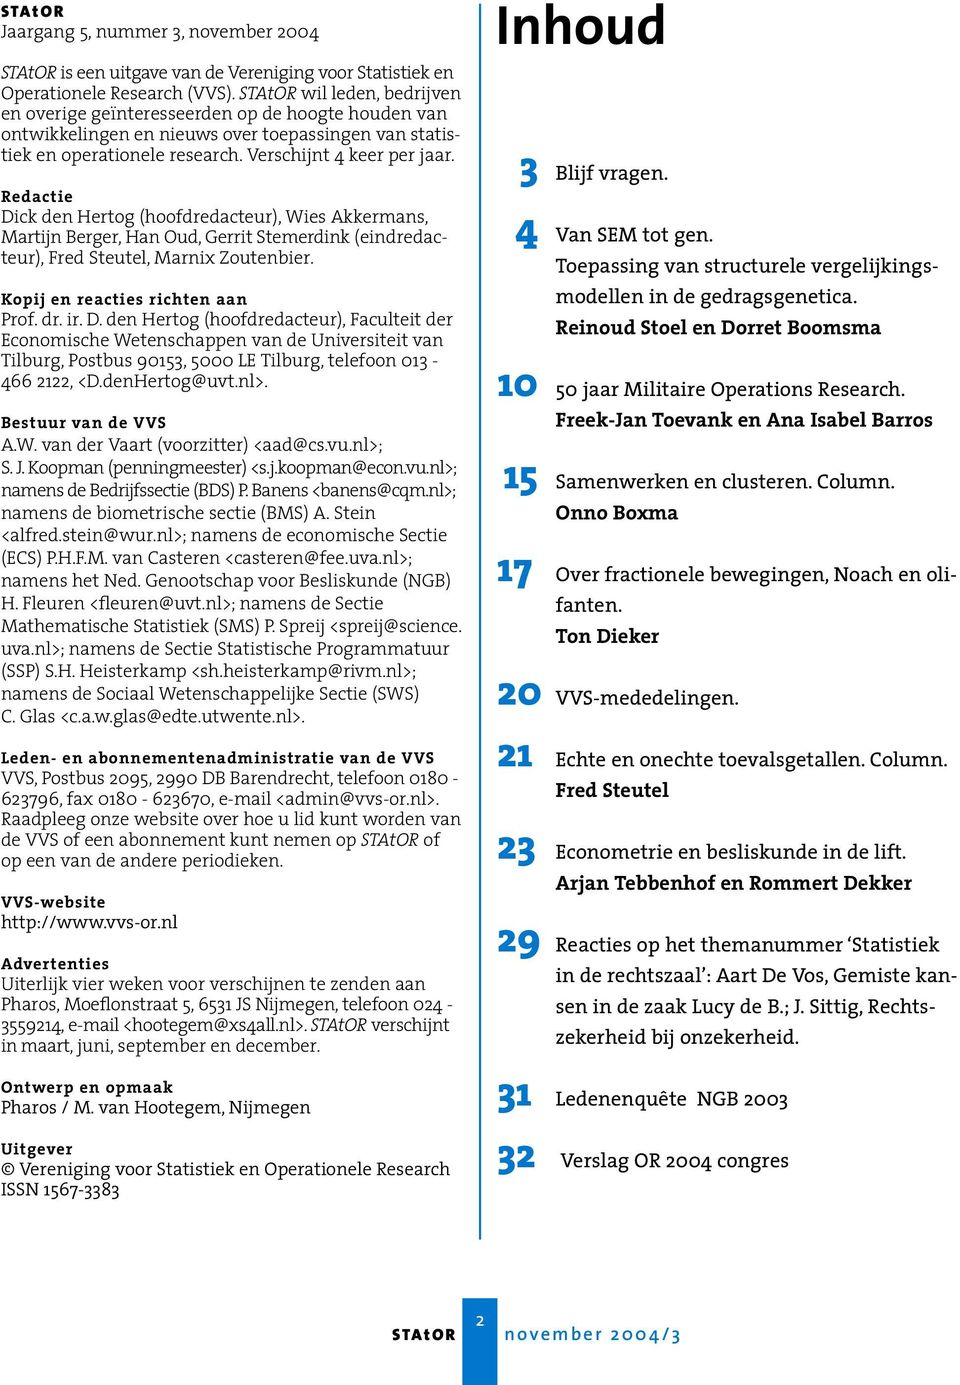 Redactie Dick den Hertog (hoofdredacteur), Wies Akkermans, Martijn Berger, Han Oud, Gerrit Stemerdink (eindredacteur), Fred Steutel, Marnix Zoutenbier. Kopij en reacties richten aan Prof. dr. ir. D. den Hertog (hoofdredacteur), Faculteit der Economische Wetenschappen van de Universiteit van Tilburg, Postbus 90153, 5000 LE Tilburg, telefoon 013-466 2122, <D.